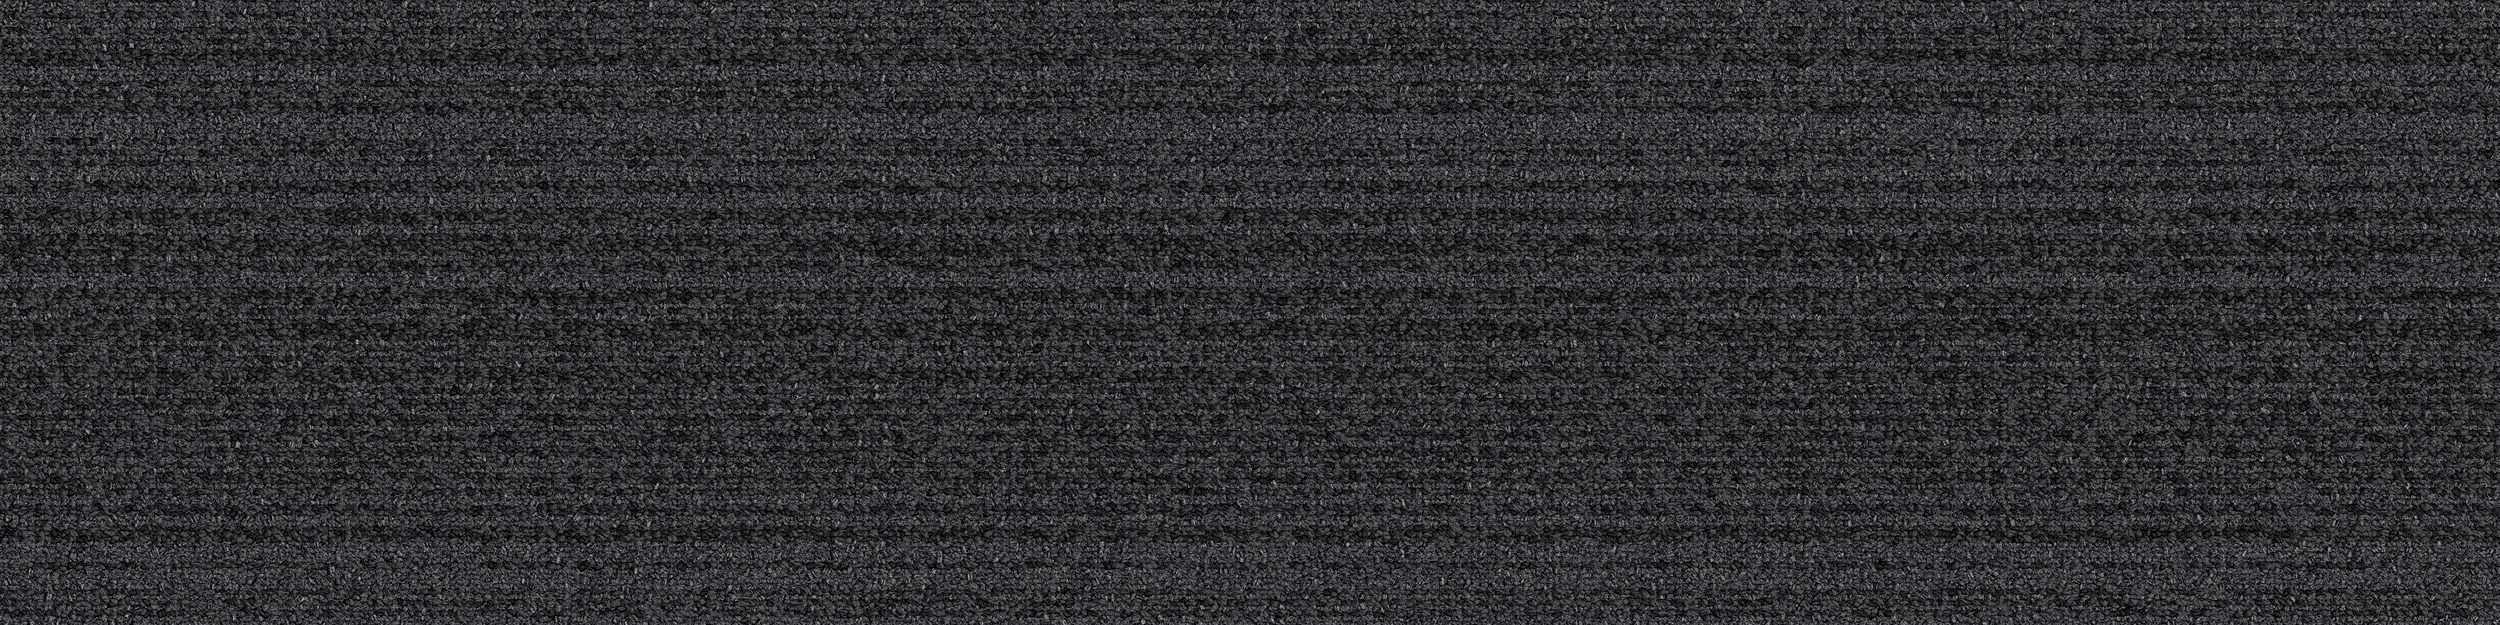 BP410 Carpet Tile In Ember image number 2